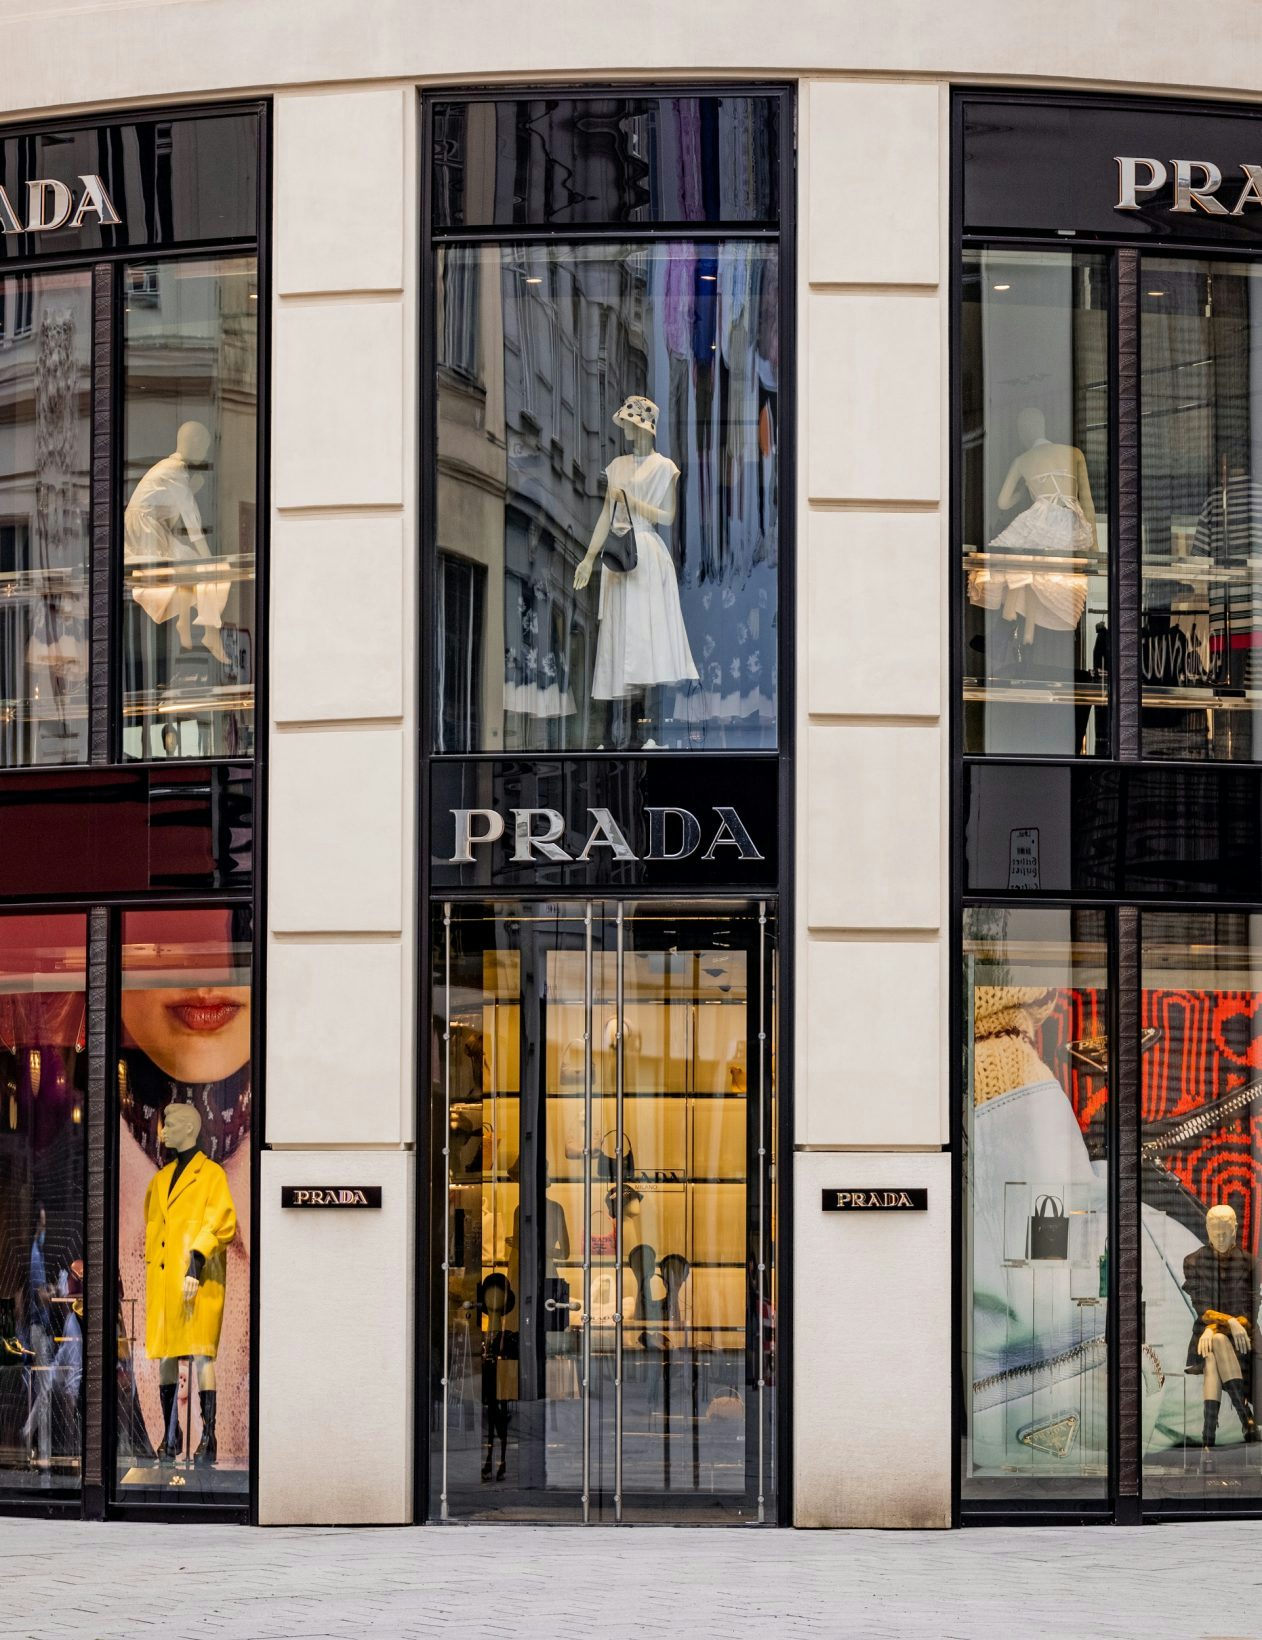 More than 400 jobs created at Prada Group